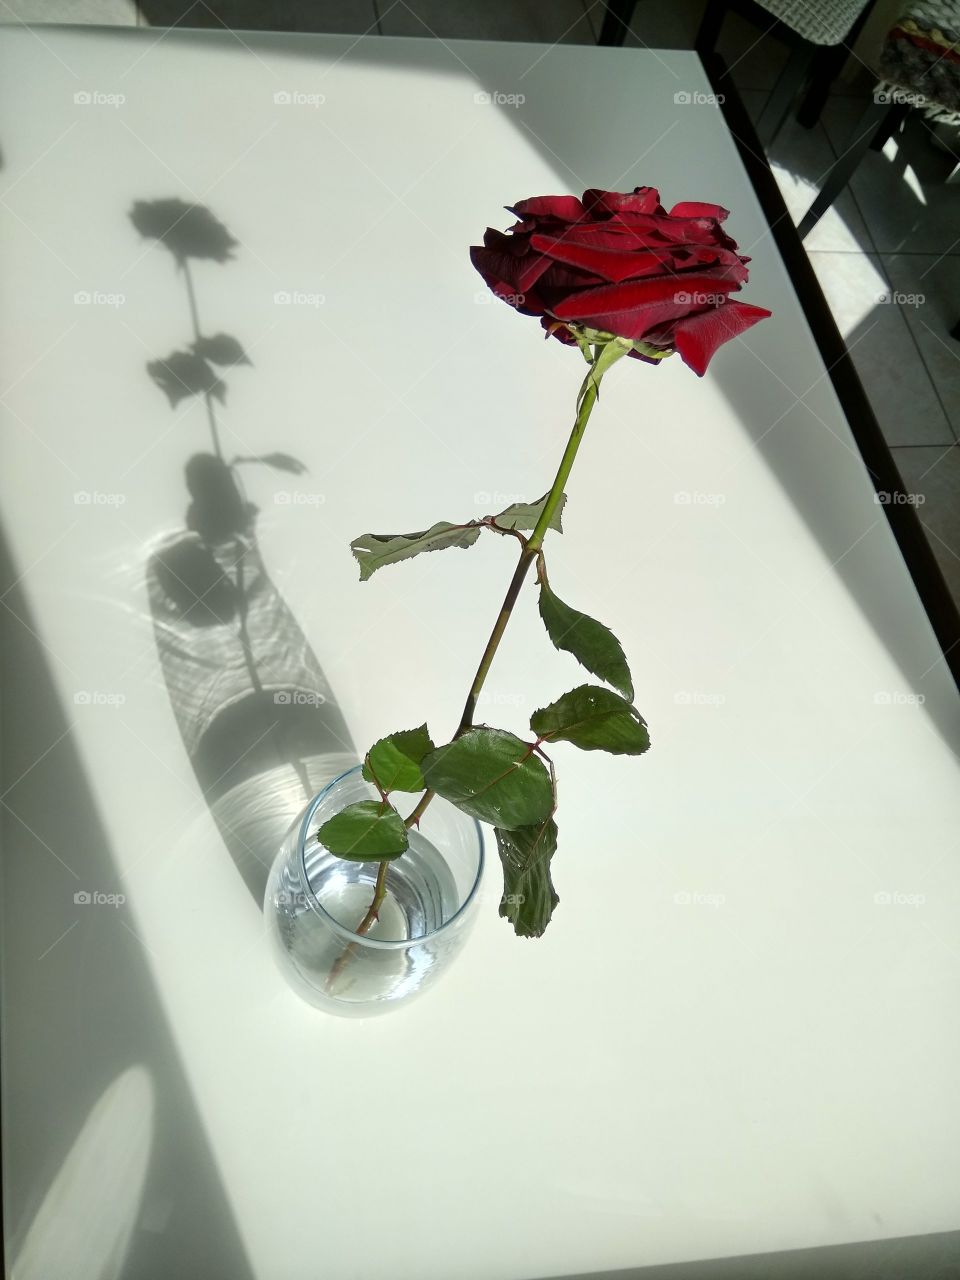 Роза и тень повстречались солнечным днем.
Rose and shadow met on a sunny afternoon.